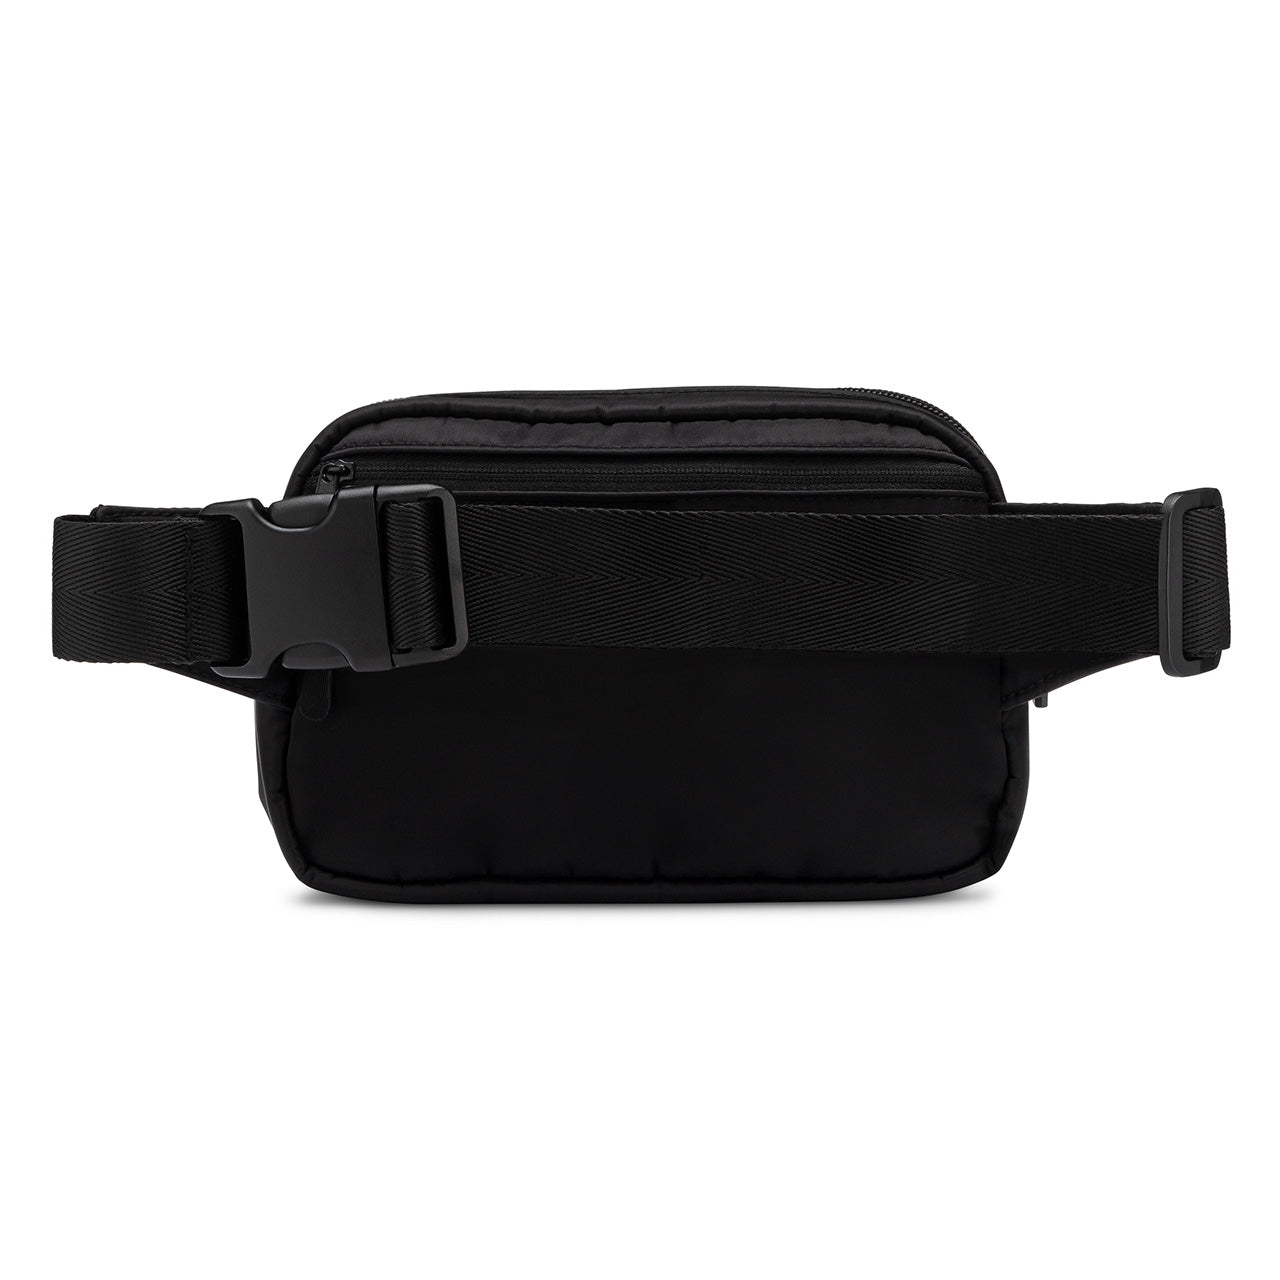 Black Belt Bag with adjustable strap